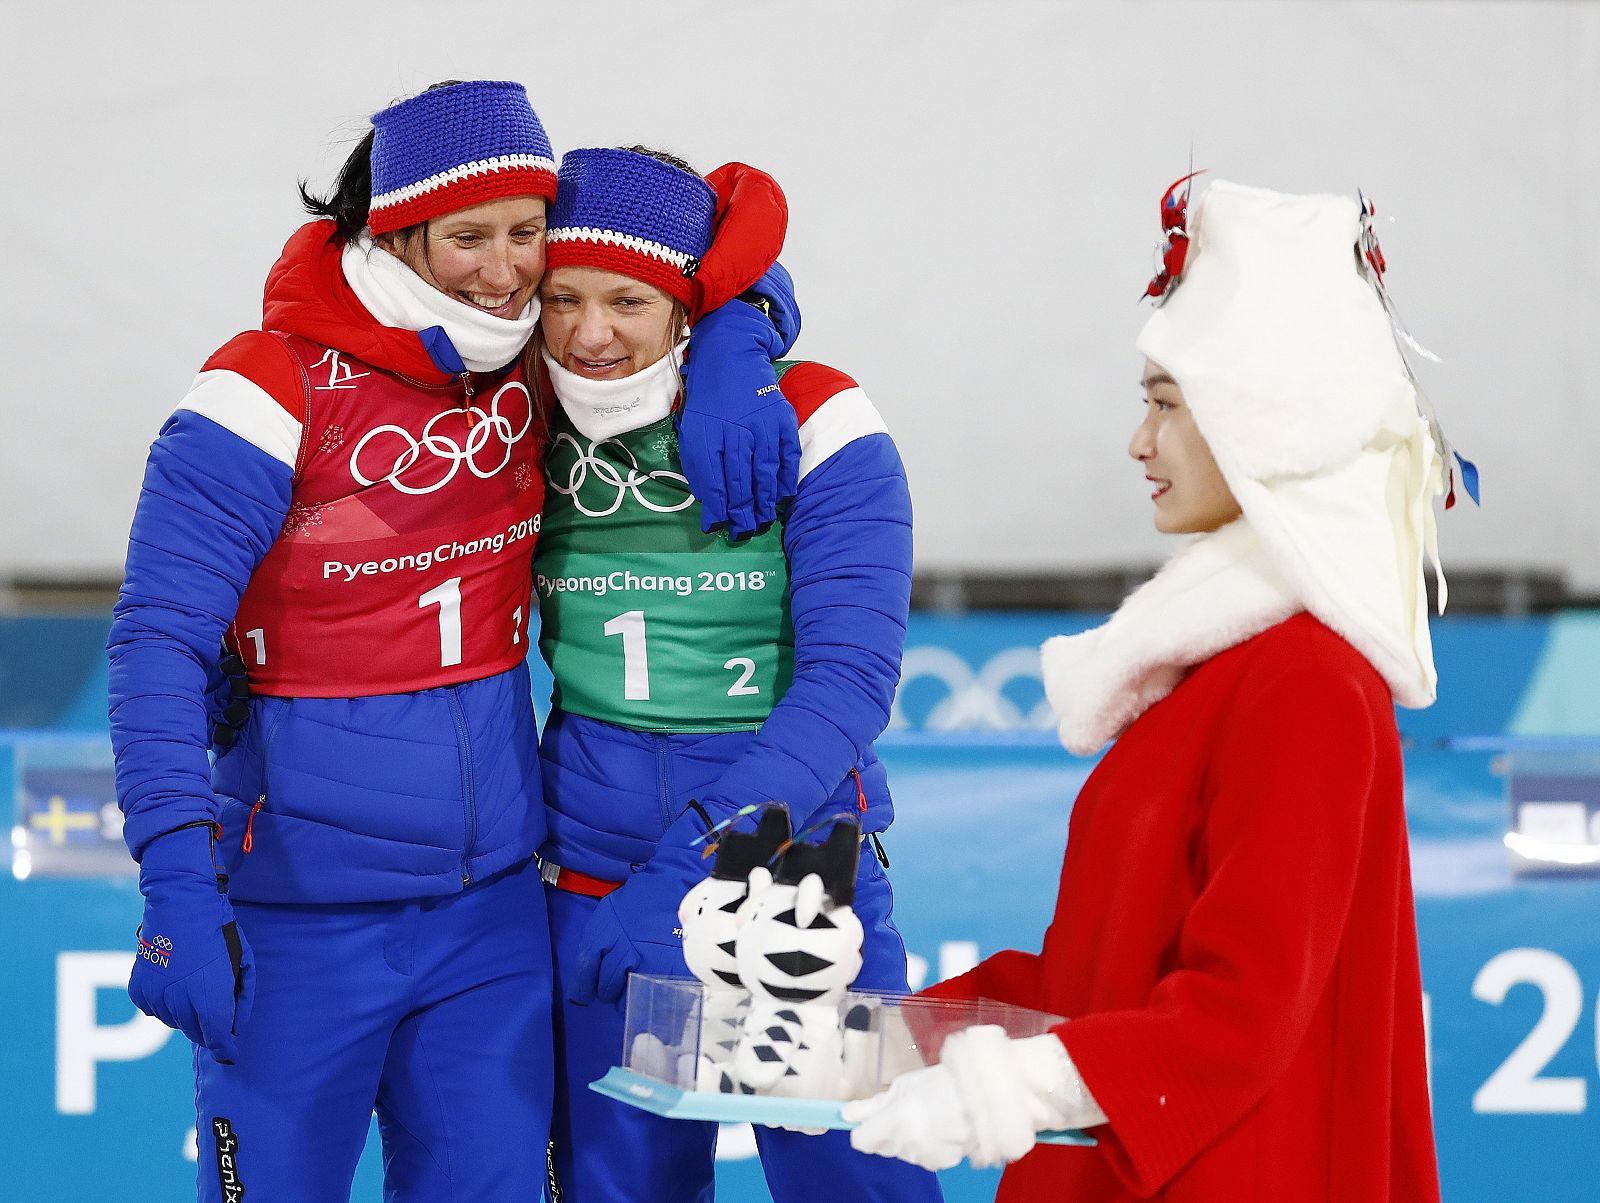 Marit Bjoergen es al atleta de invierno con más medallas en la historia de los Juegos.